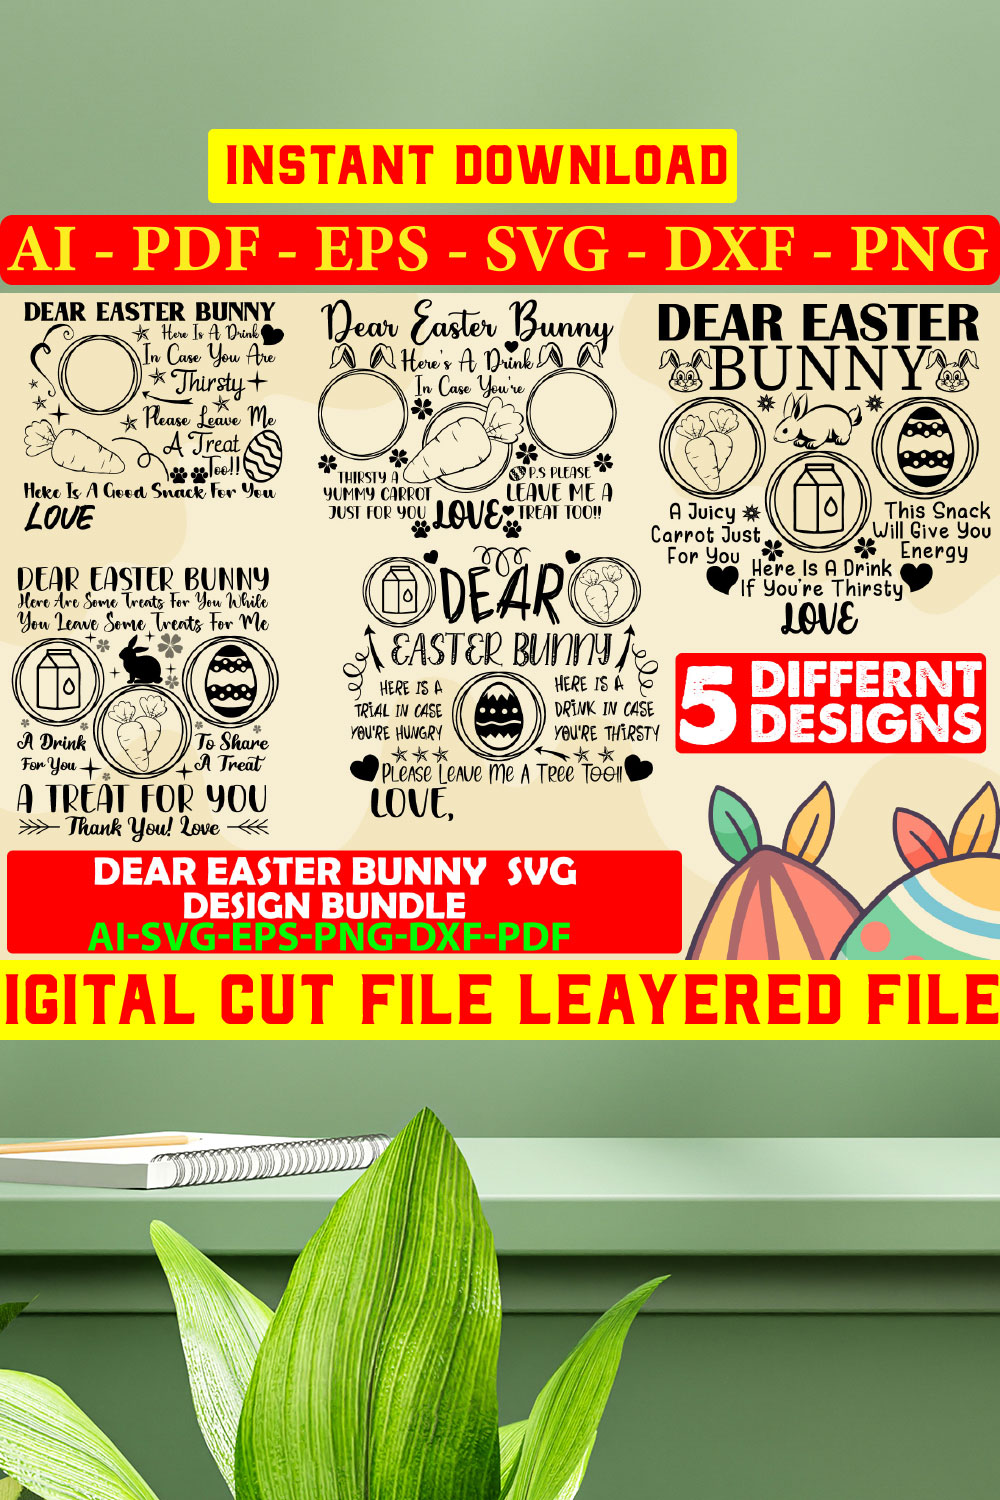 Dear Easter Bunny Svg Design Bundle Vol-07 pinterest preview image.